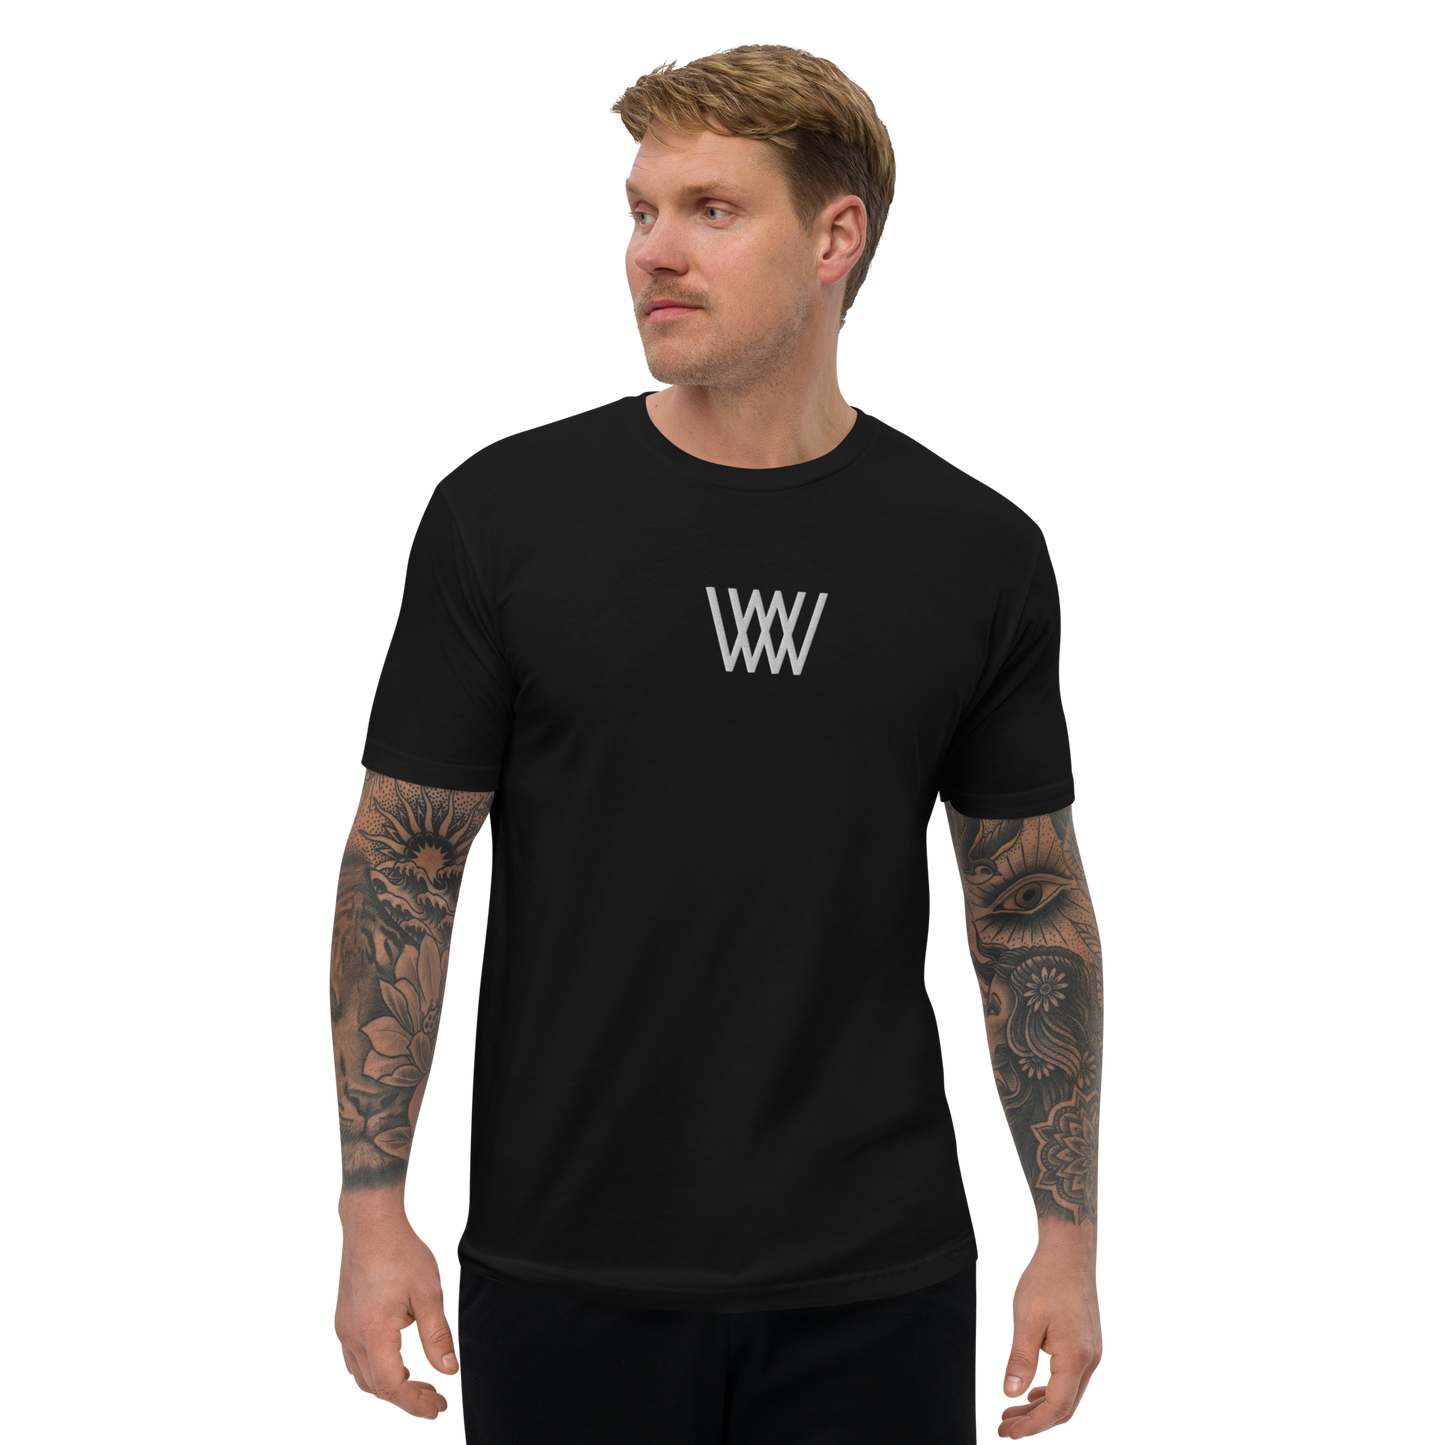 The Weave Shirt V1